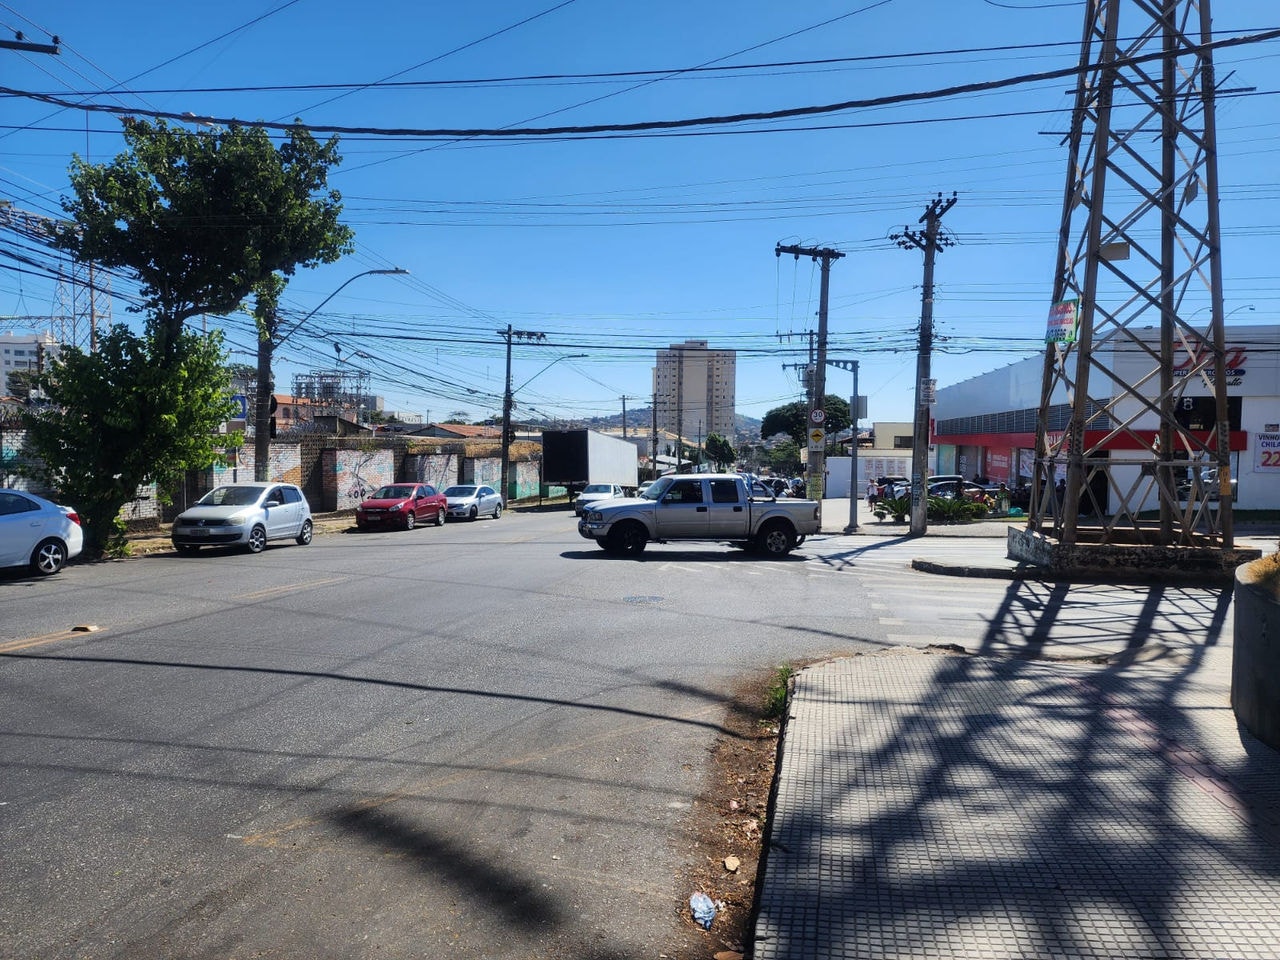 Cruzamento das avenidas Dr. Cristiano Guimarães e Gaivotas, no bairro Vila Clóris, na região Norte de Belo Horizonte
